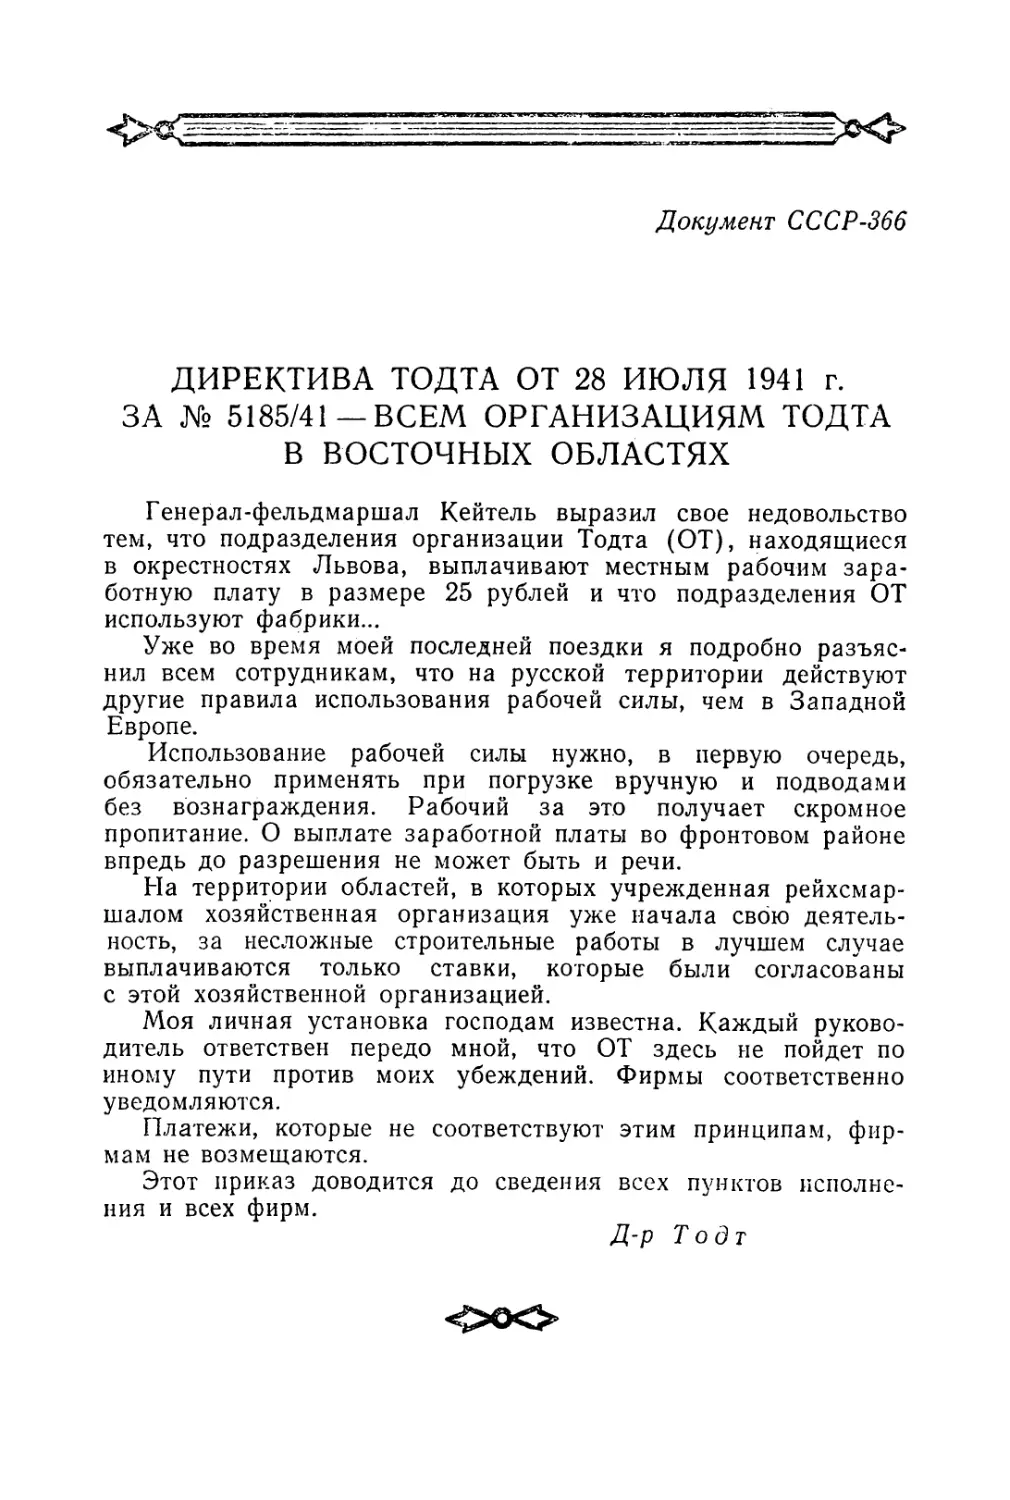 Директива Тодта от 28 июля 1941 г. о запрещении оплачивать труд рабочих в оккупированных восточных областях